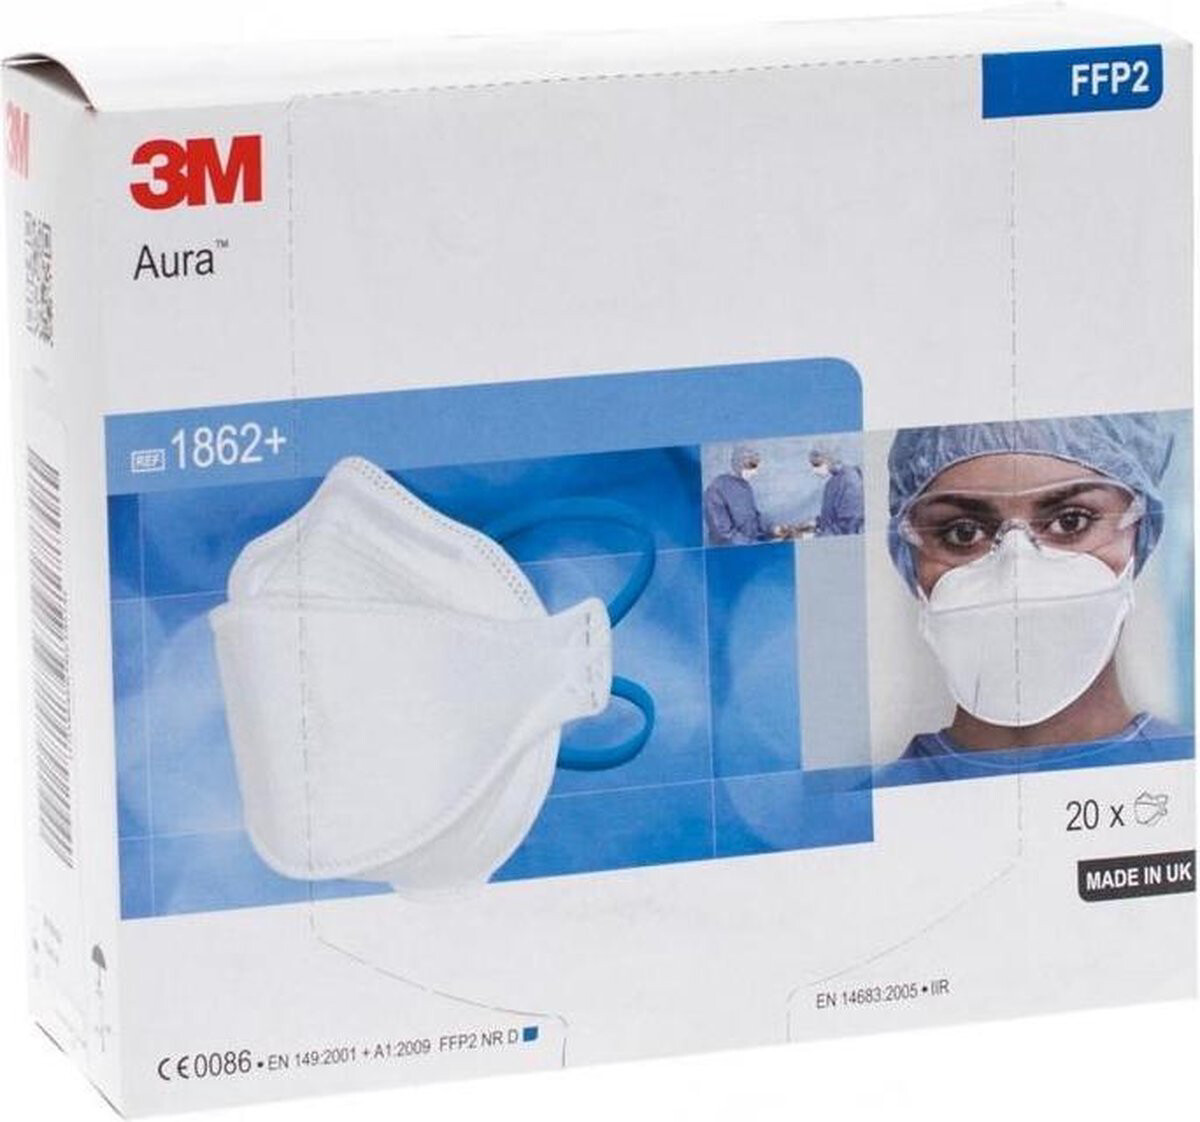 3M™ Aura respiratorisch FFP2 maskerType IIR EN 14683:2005 classificatie.